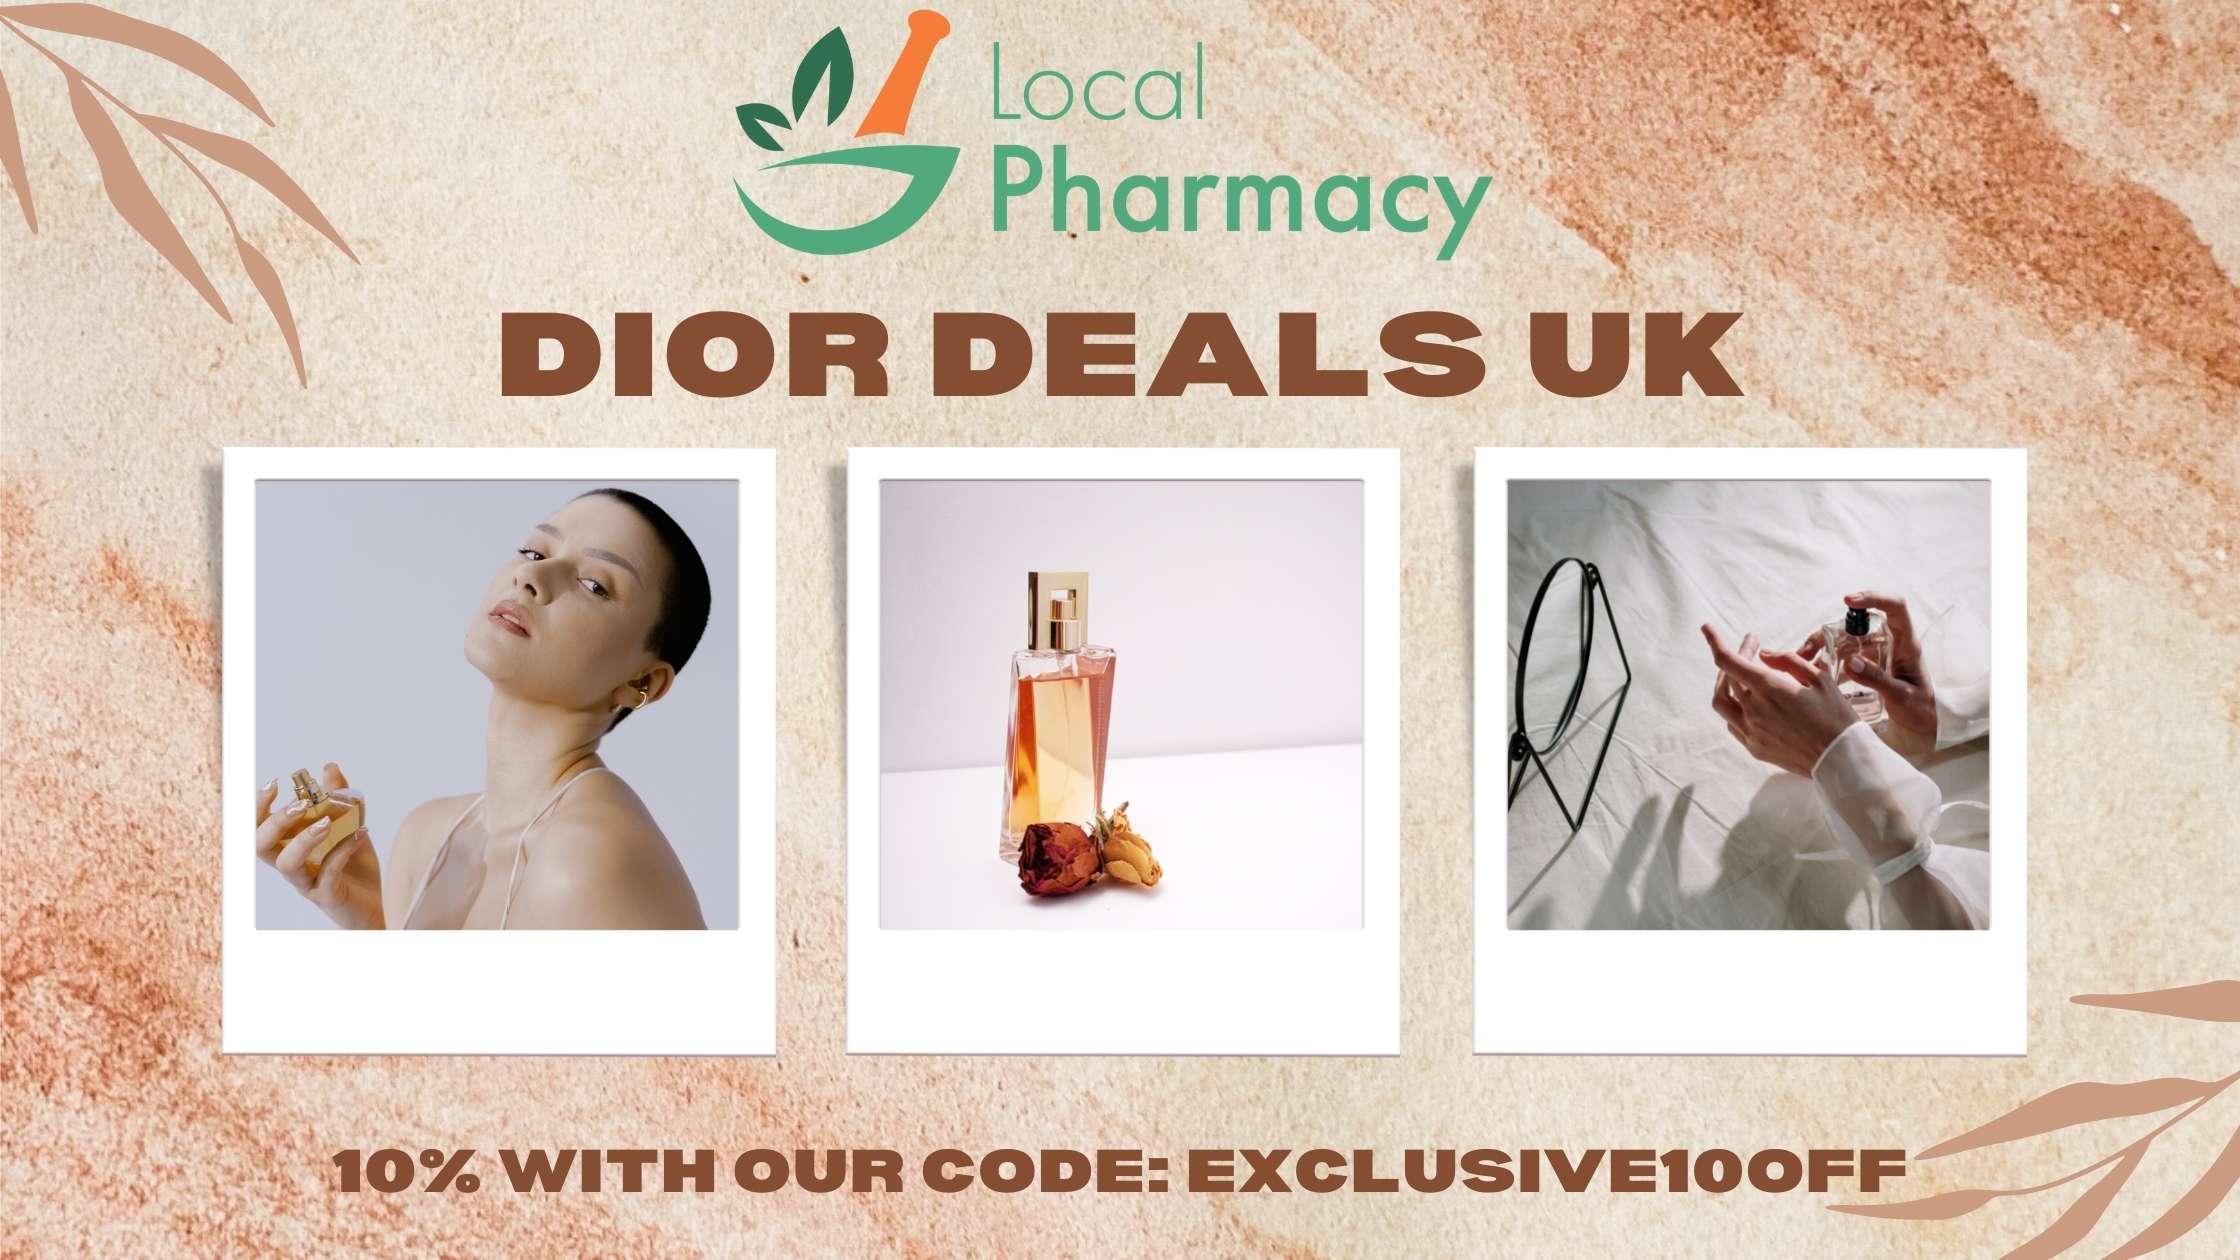 Dior coupon code and deals uk